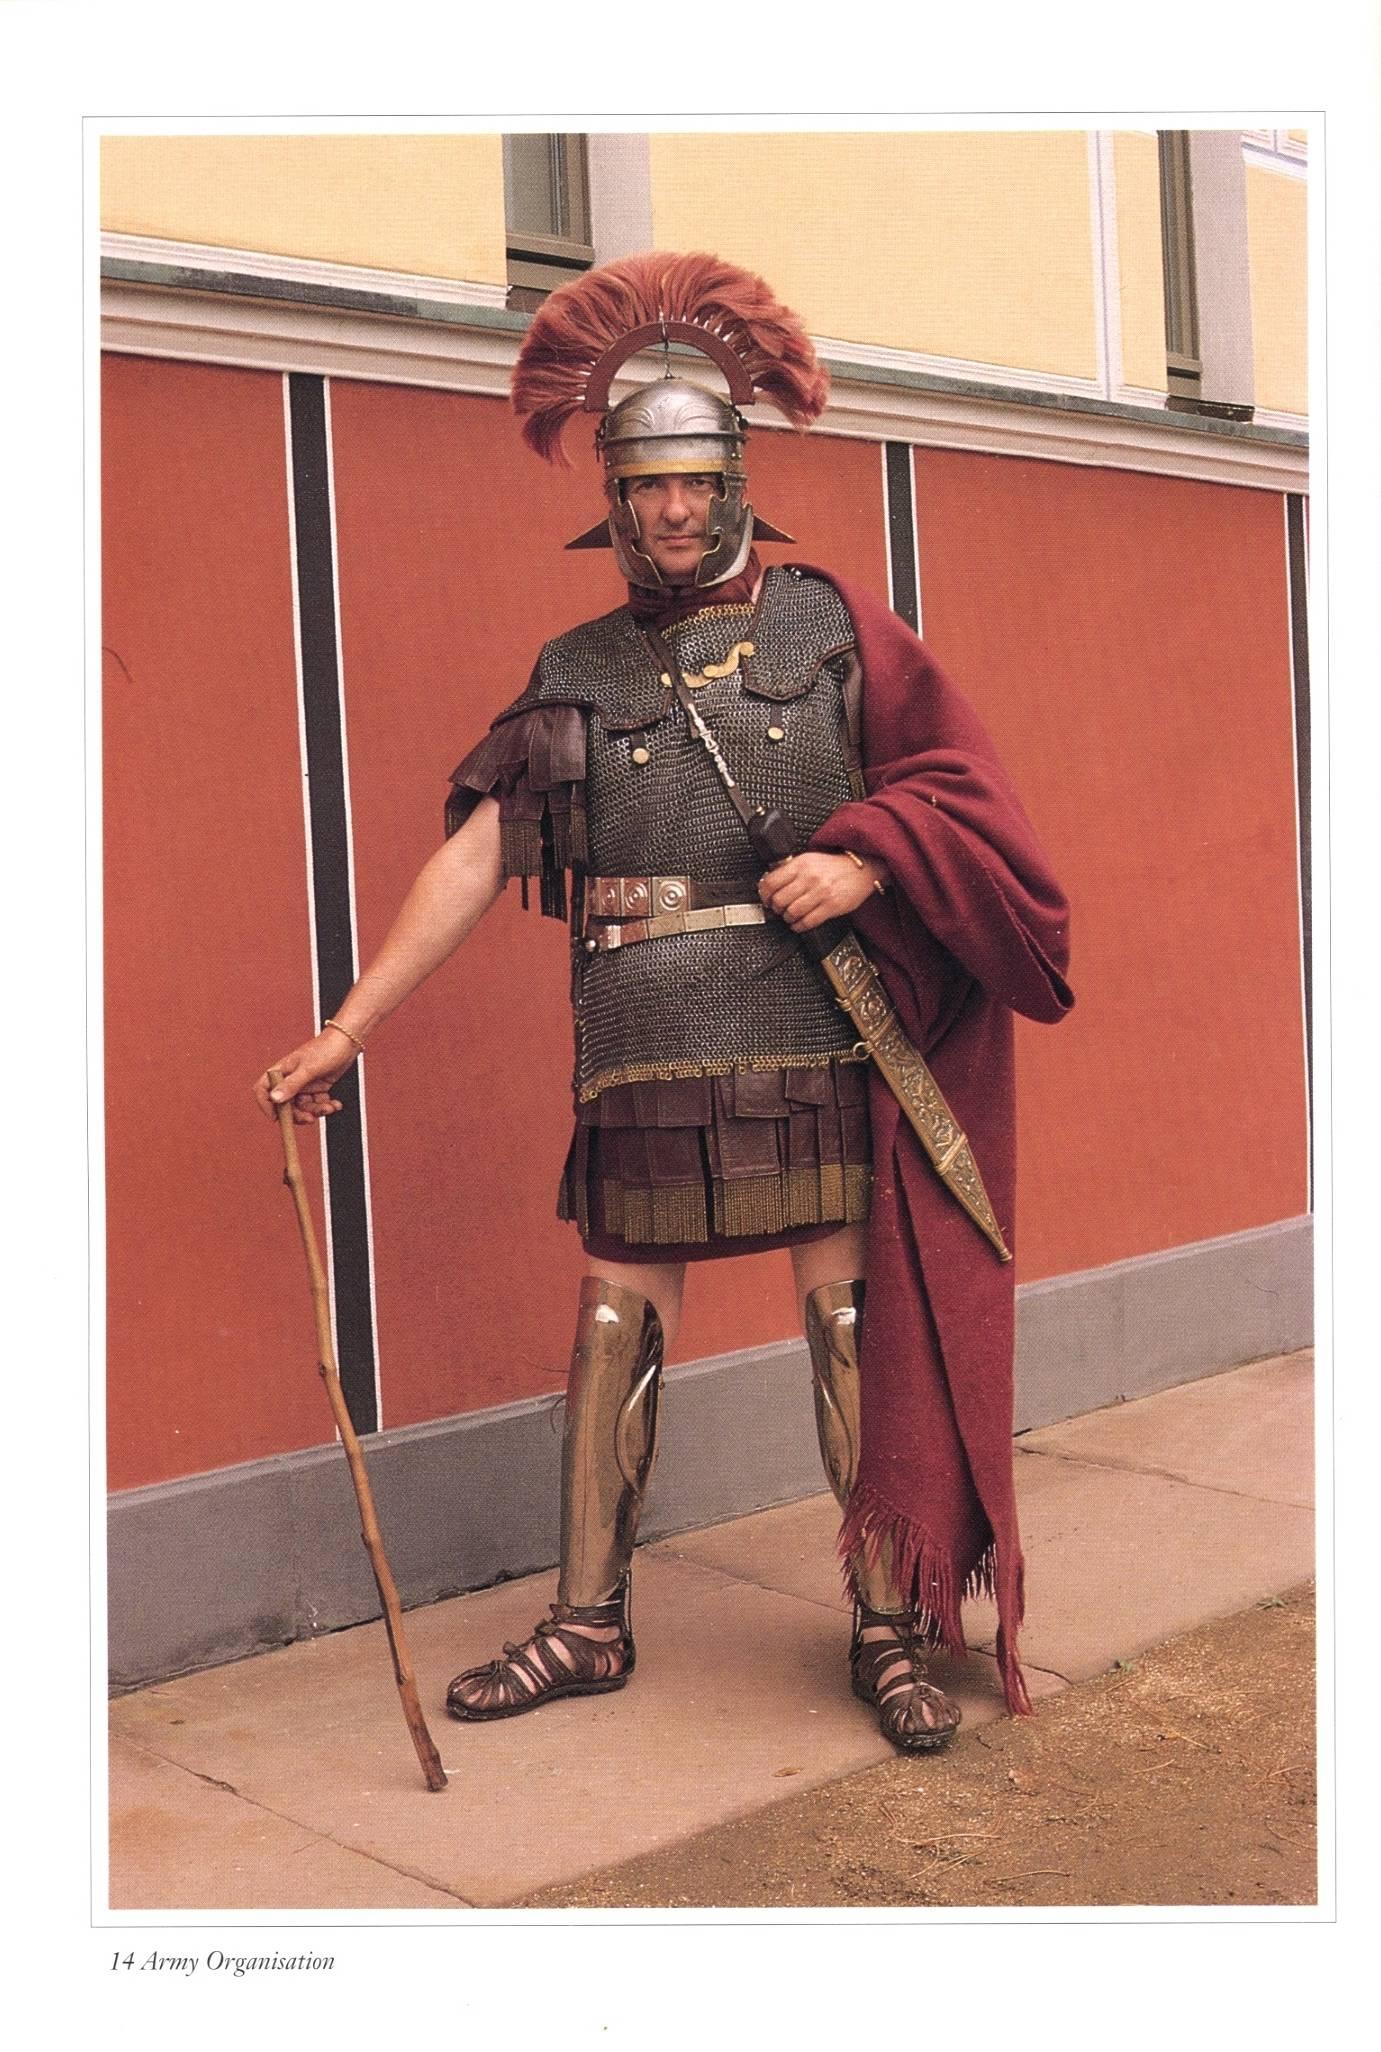 罗马帝国皇帝盔甲图片